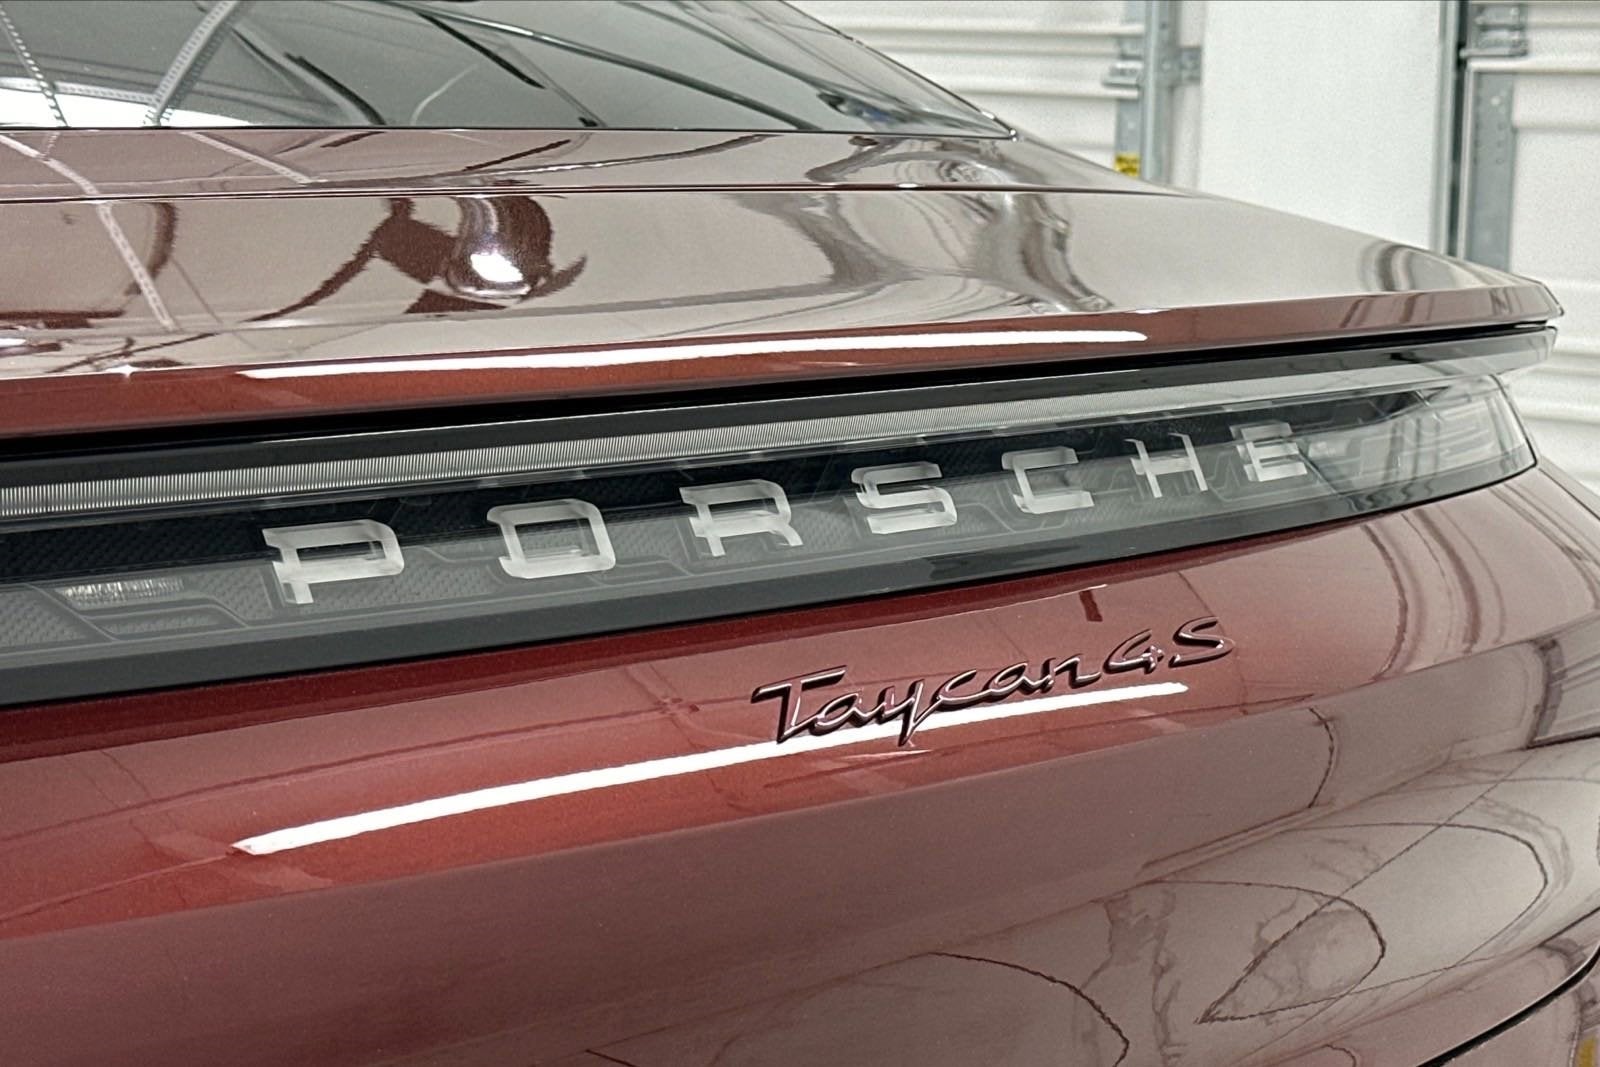 2023 Porsche Taycan 4S